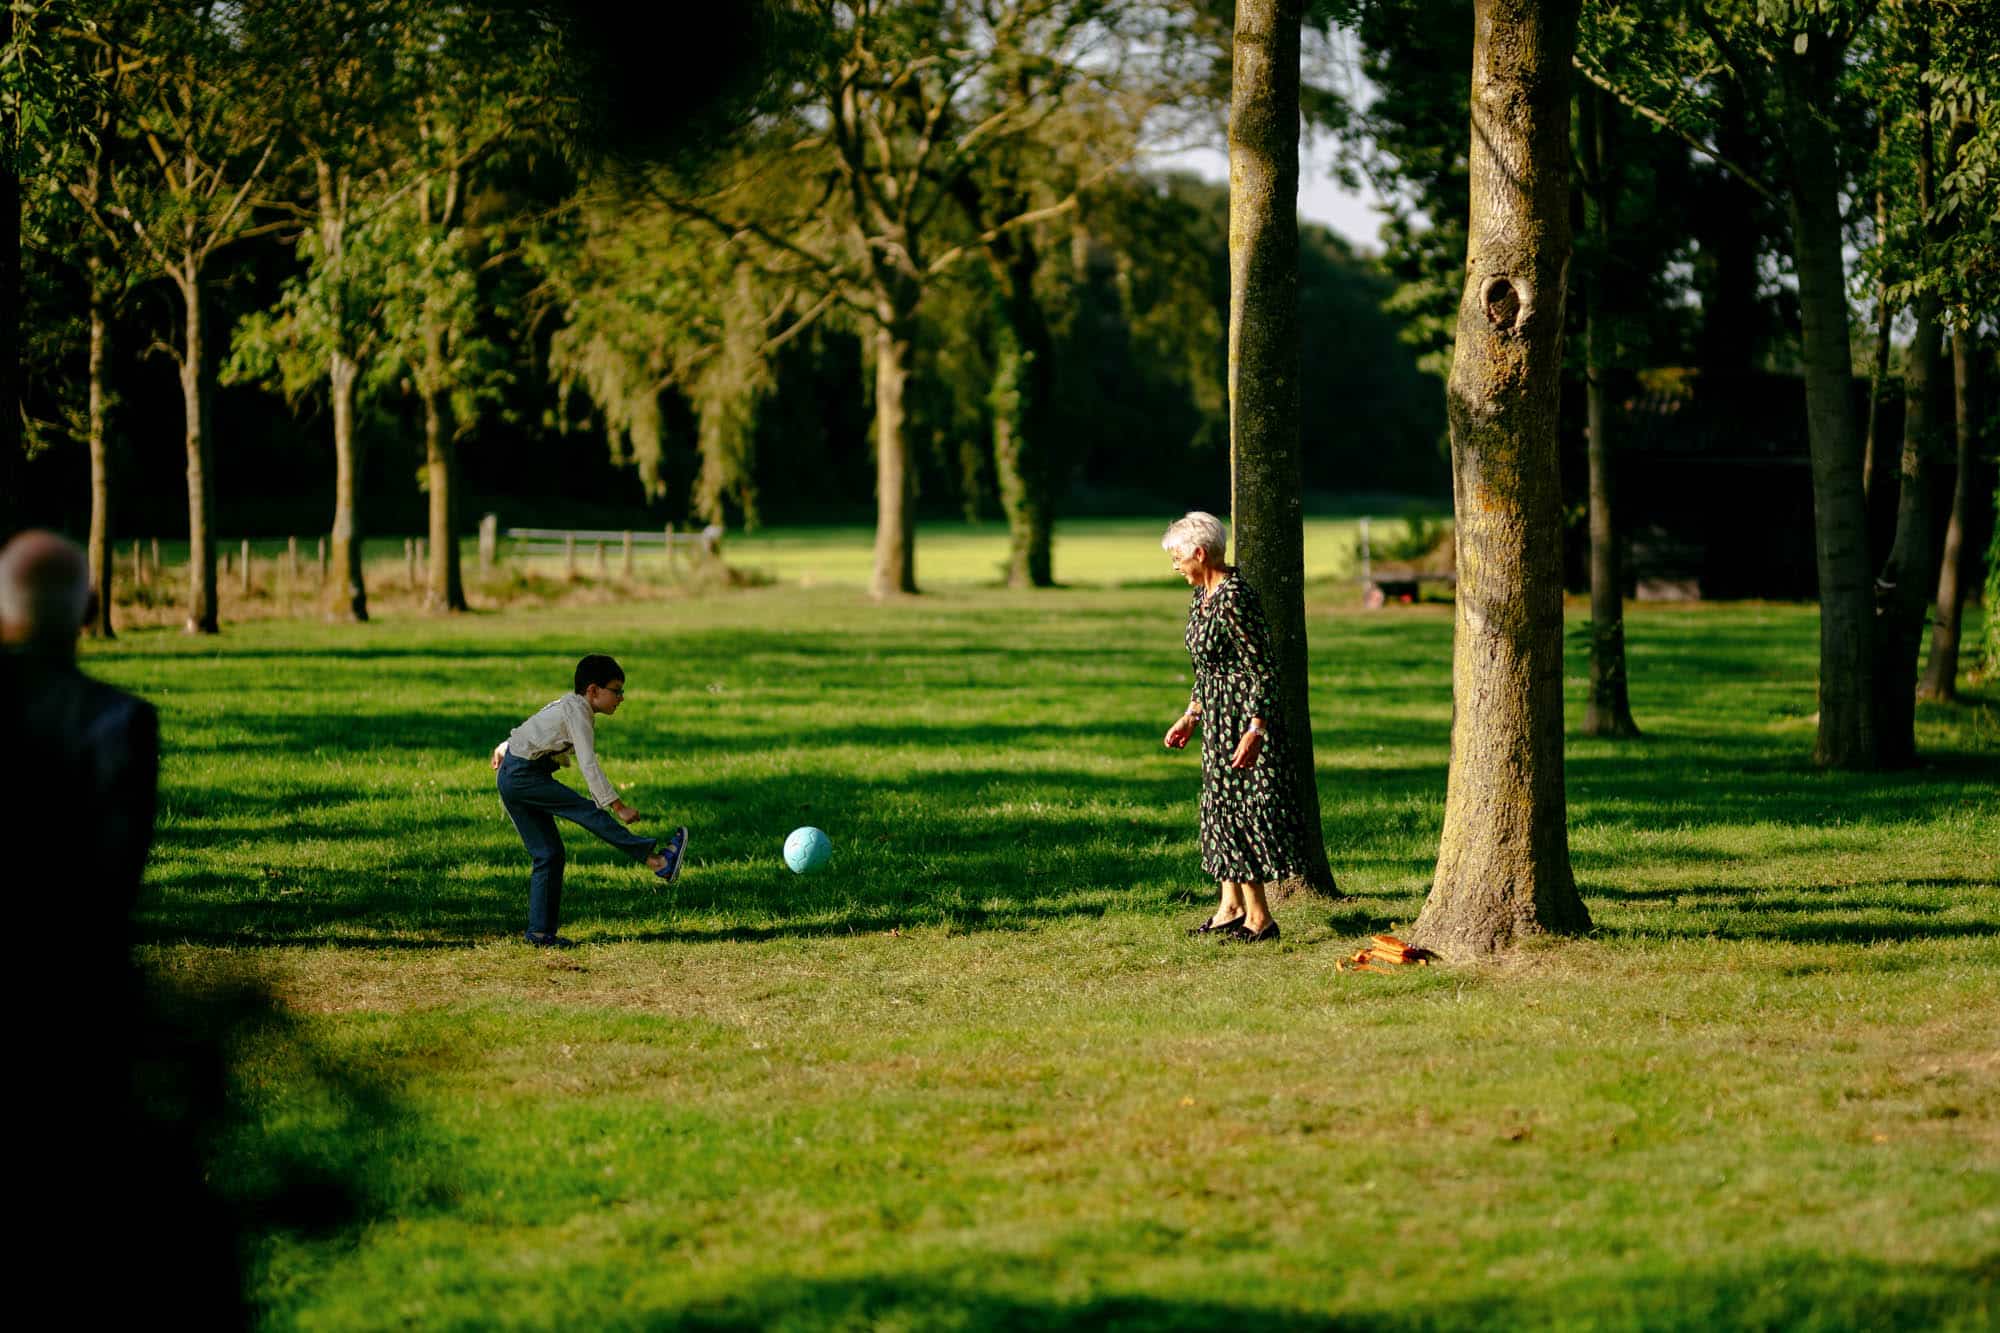     Beschrijving: Een vrouw speelt een spel met een bal in een park.